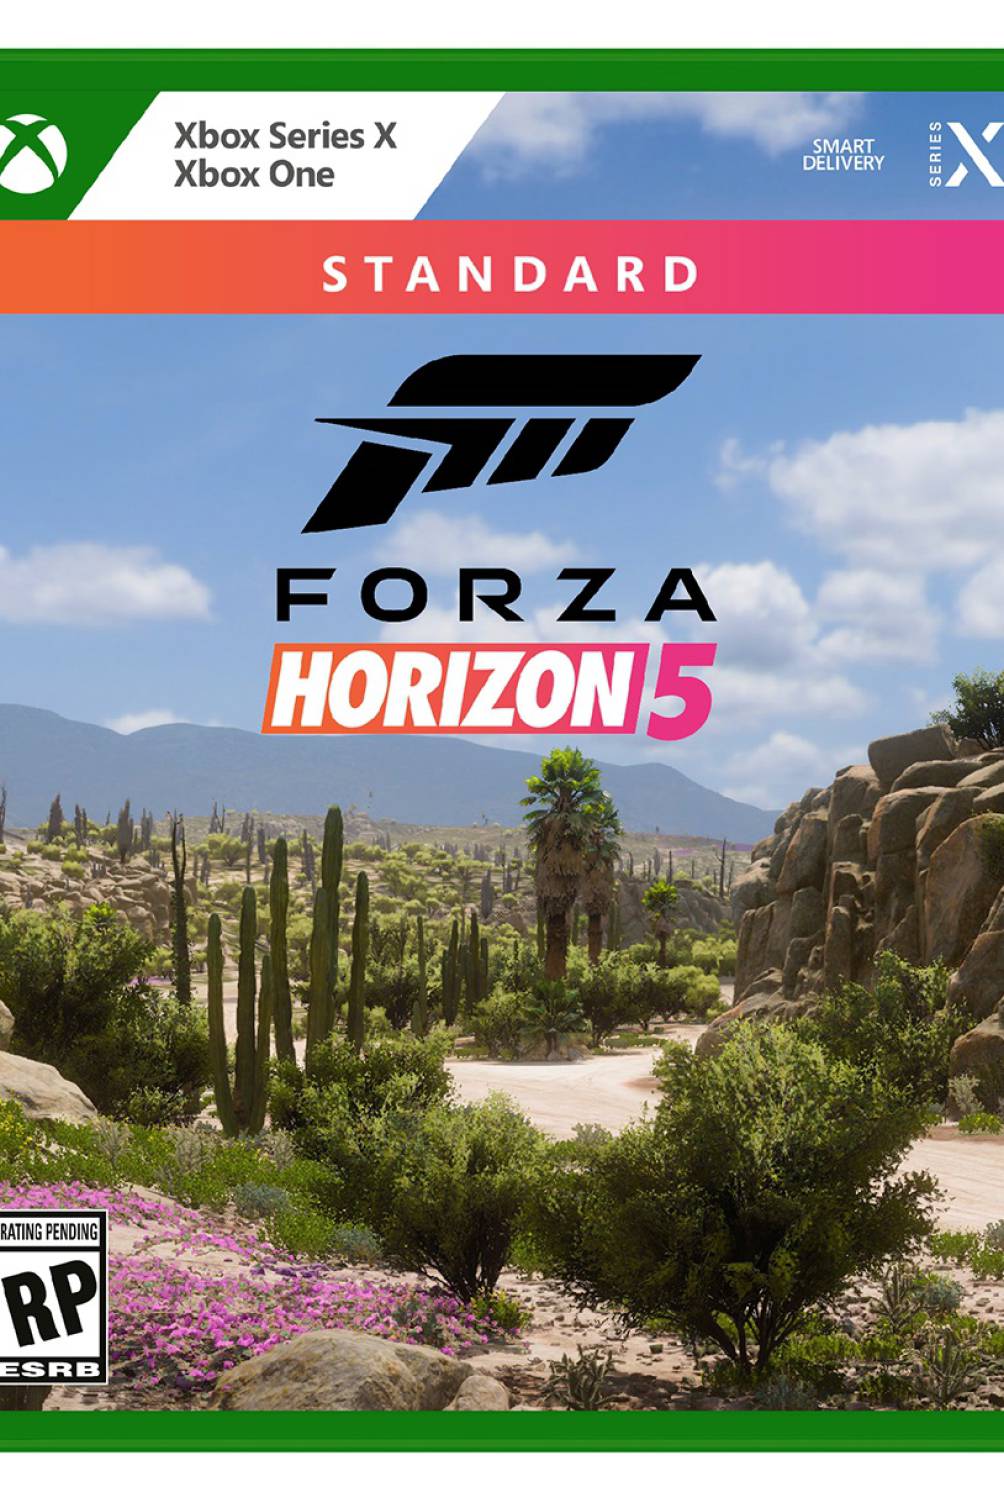 XBOX - Videojuego Forza Horizon 5 Xbox One Xbox Series X Idioma Español